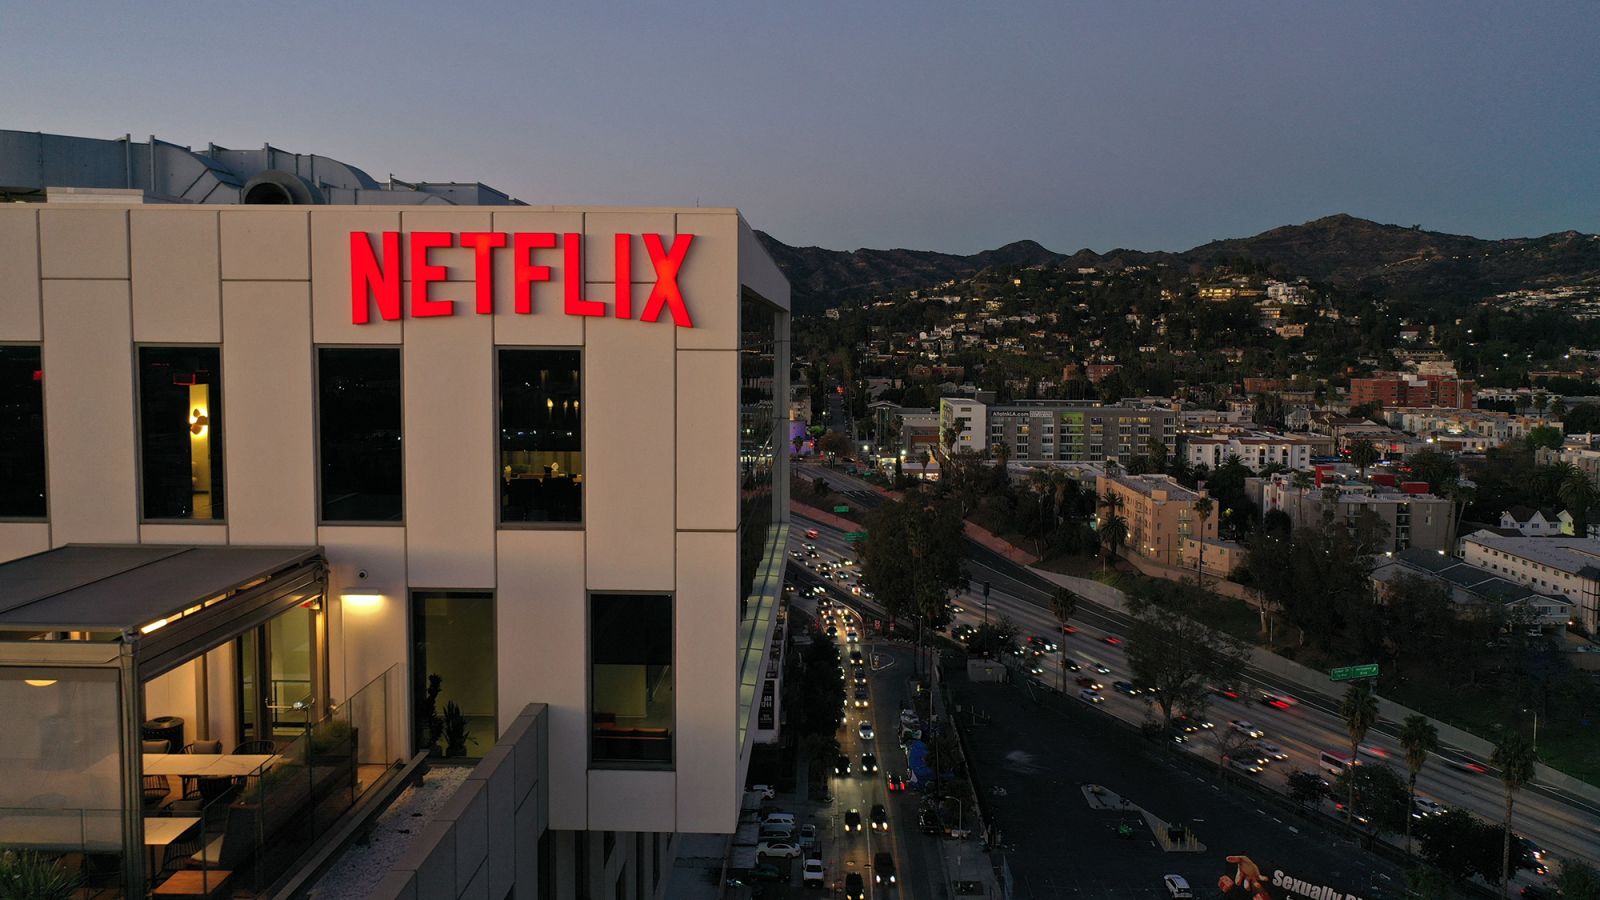 Netflix tomó medidas enérgicas contra el intercambio de contraseñas. ¿El resultado? Millones de nuevos suscriptores